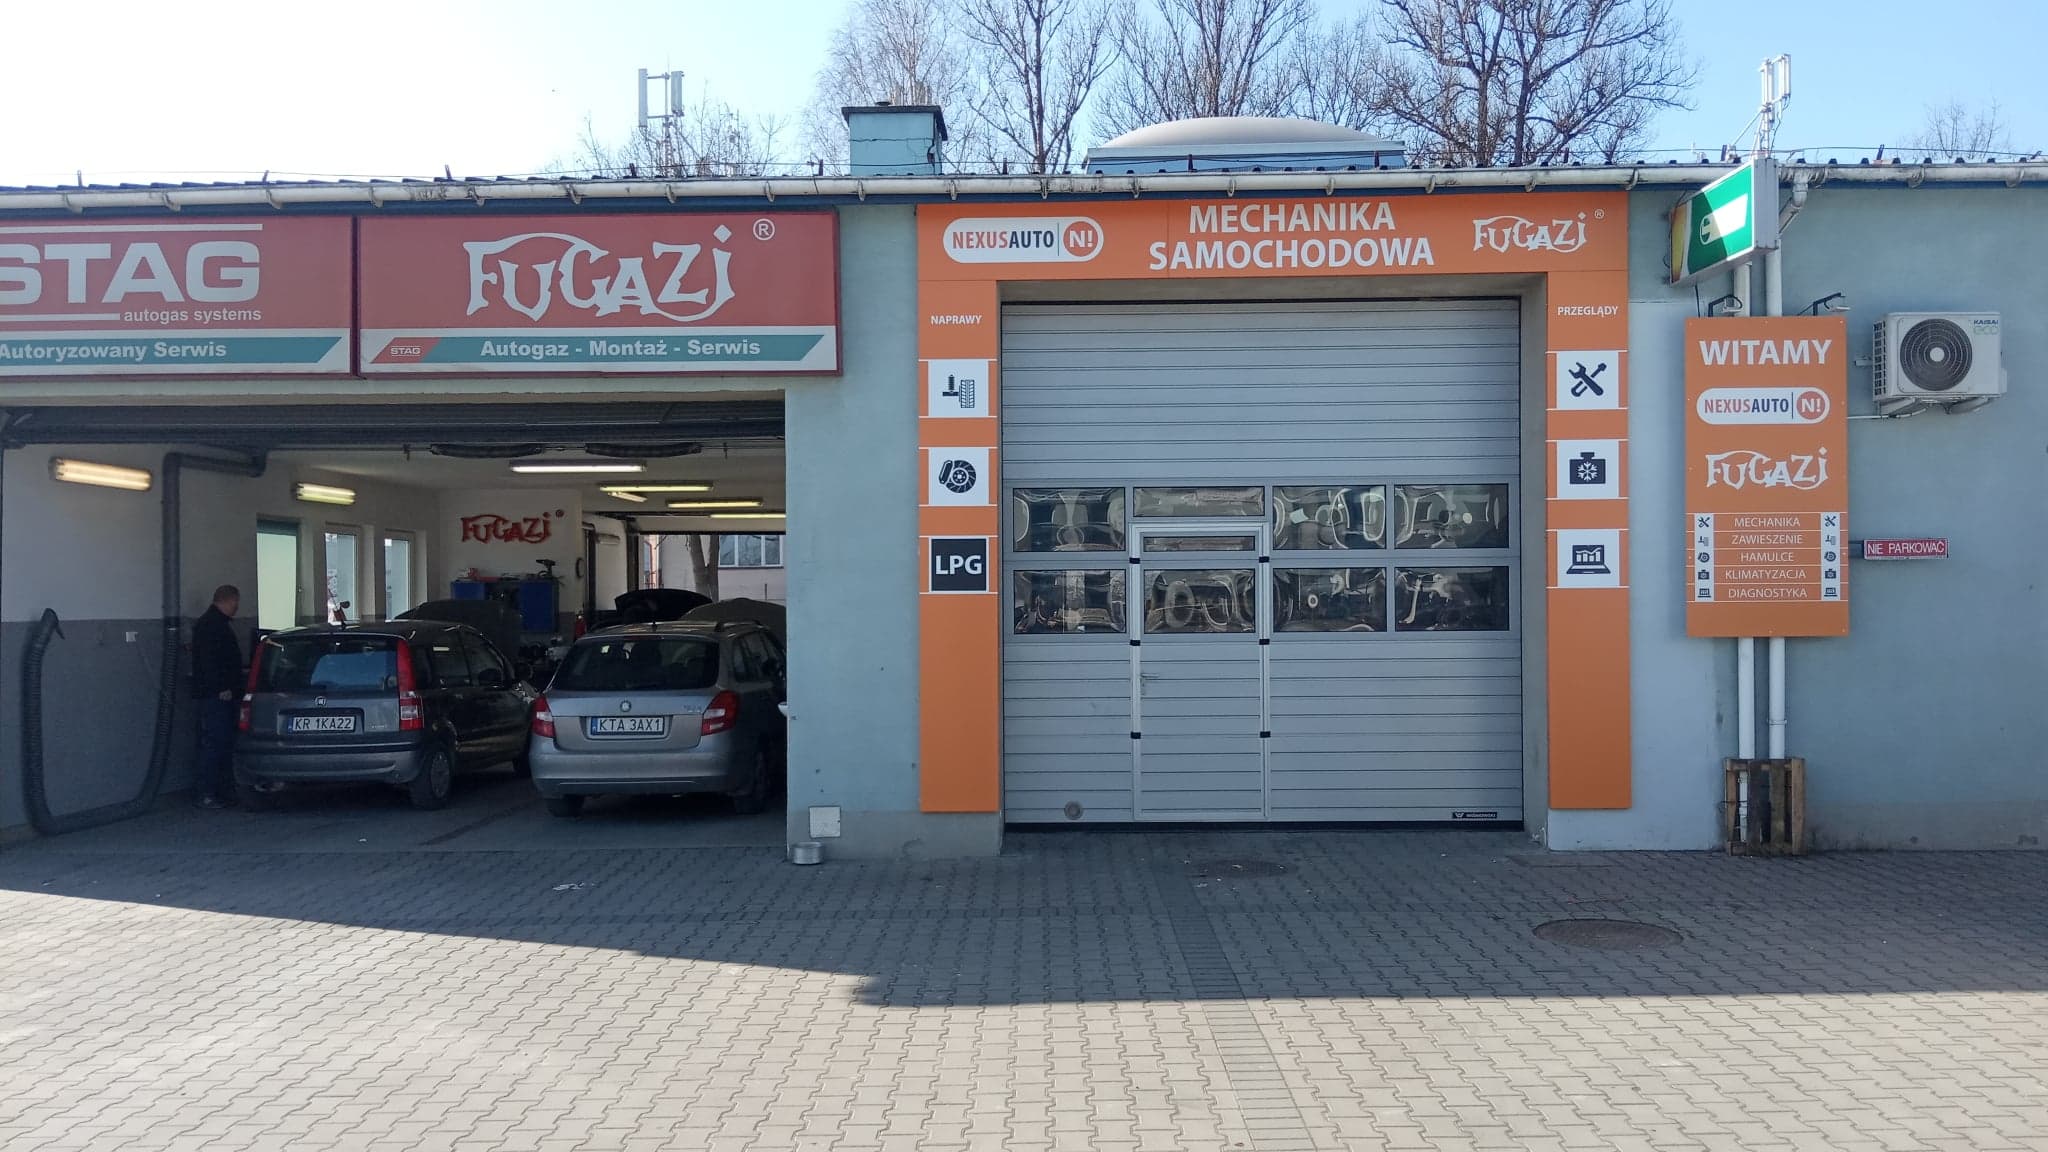 NEXUSAUTO Warsztat samochodowy Kraków | FUGAZI AUTO SERWIS